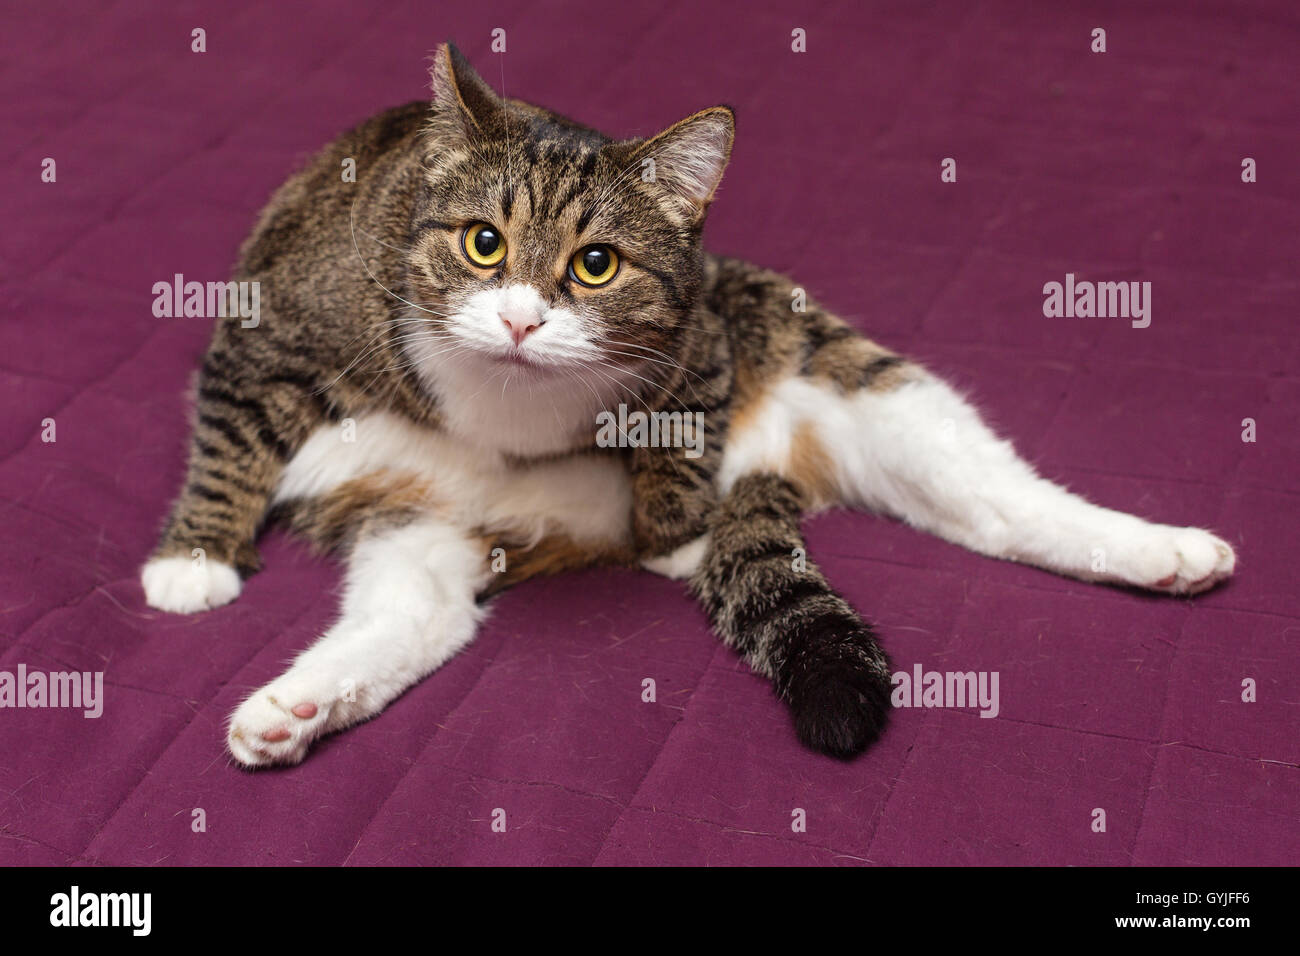 Chat est assis sur le lit dans une drôle de position Banque D'Images